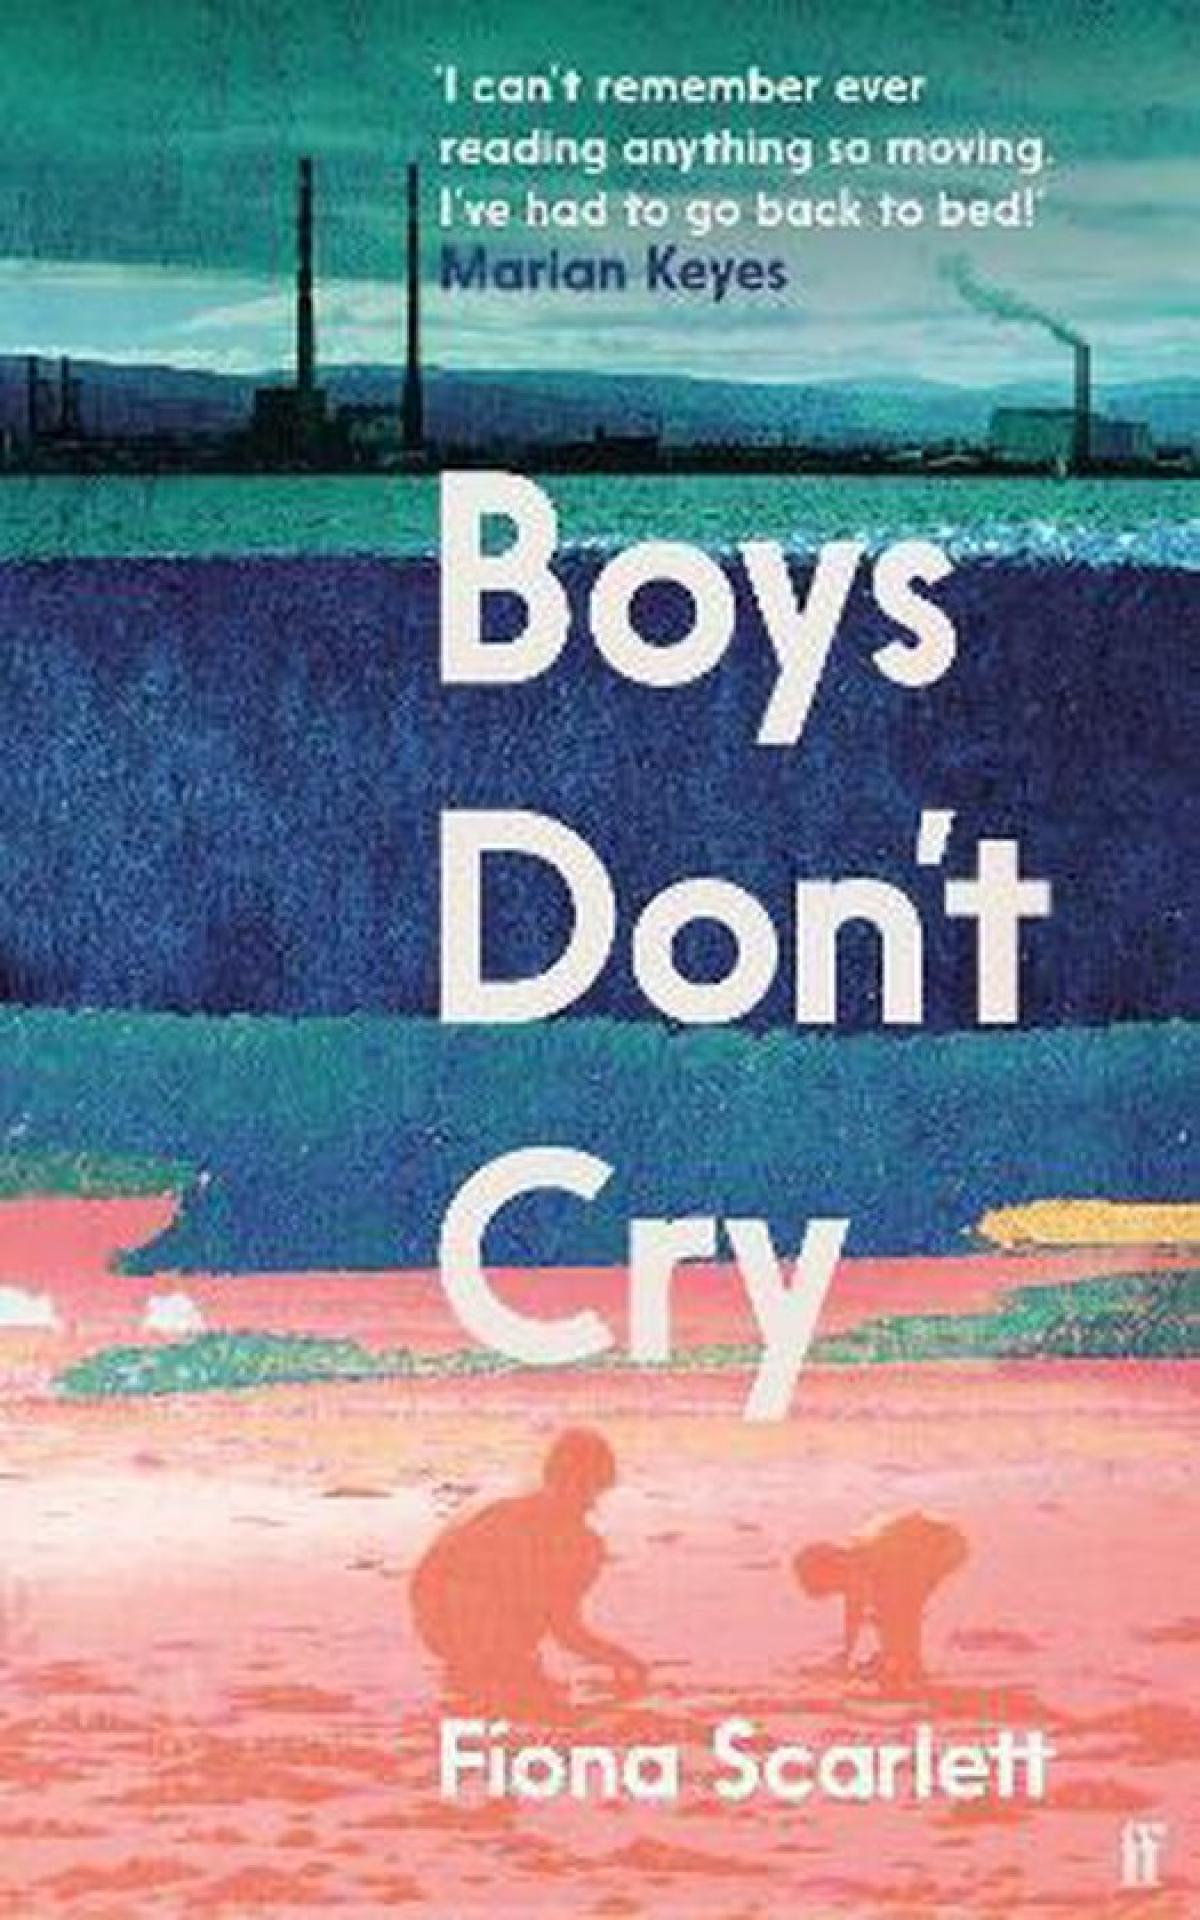 Boys don’t cry - Fiona Scarlett